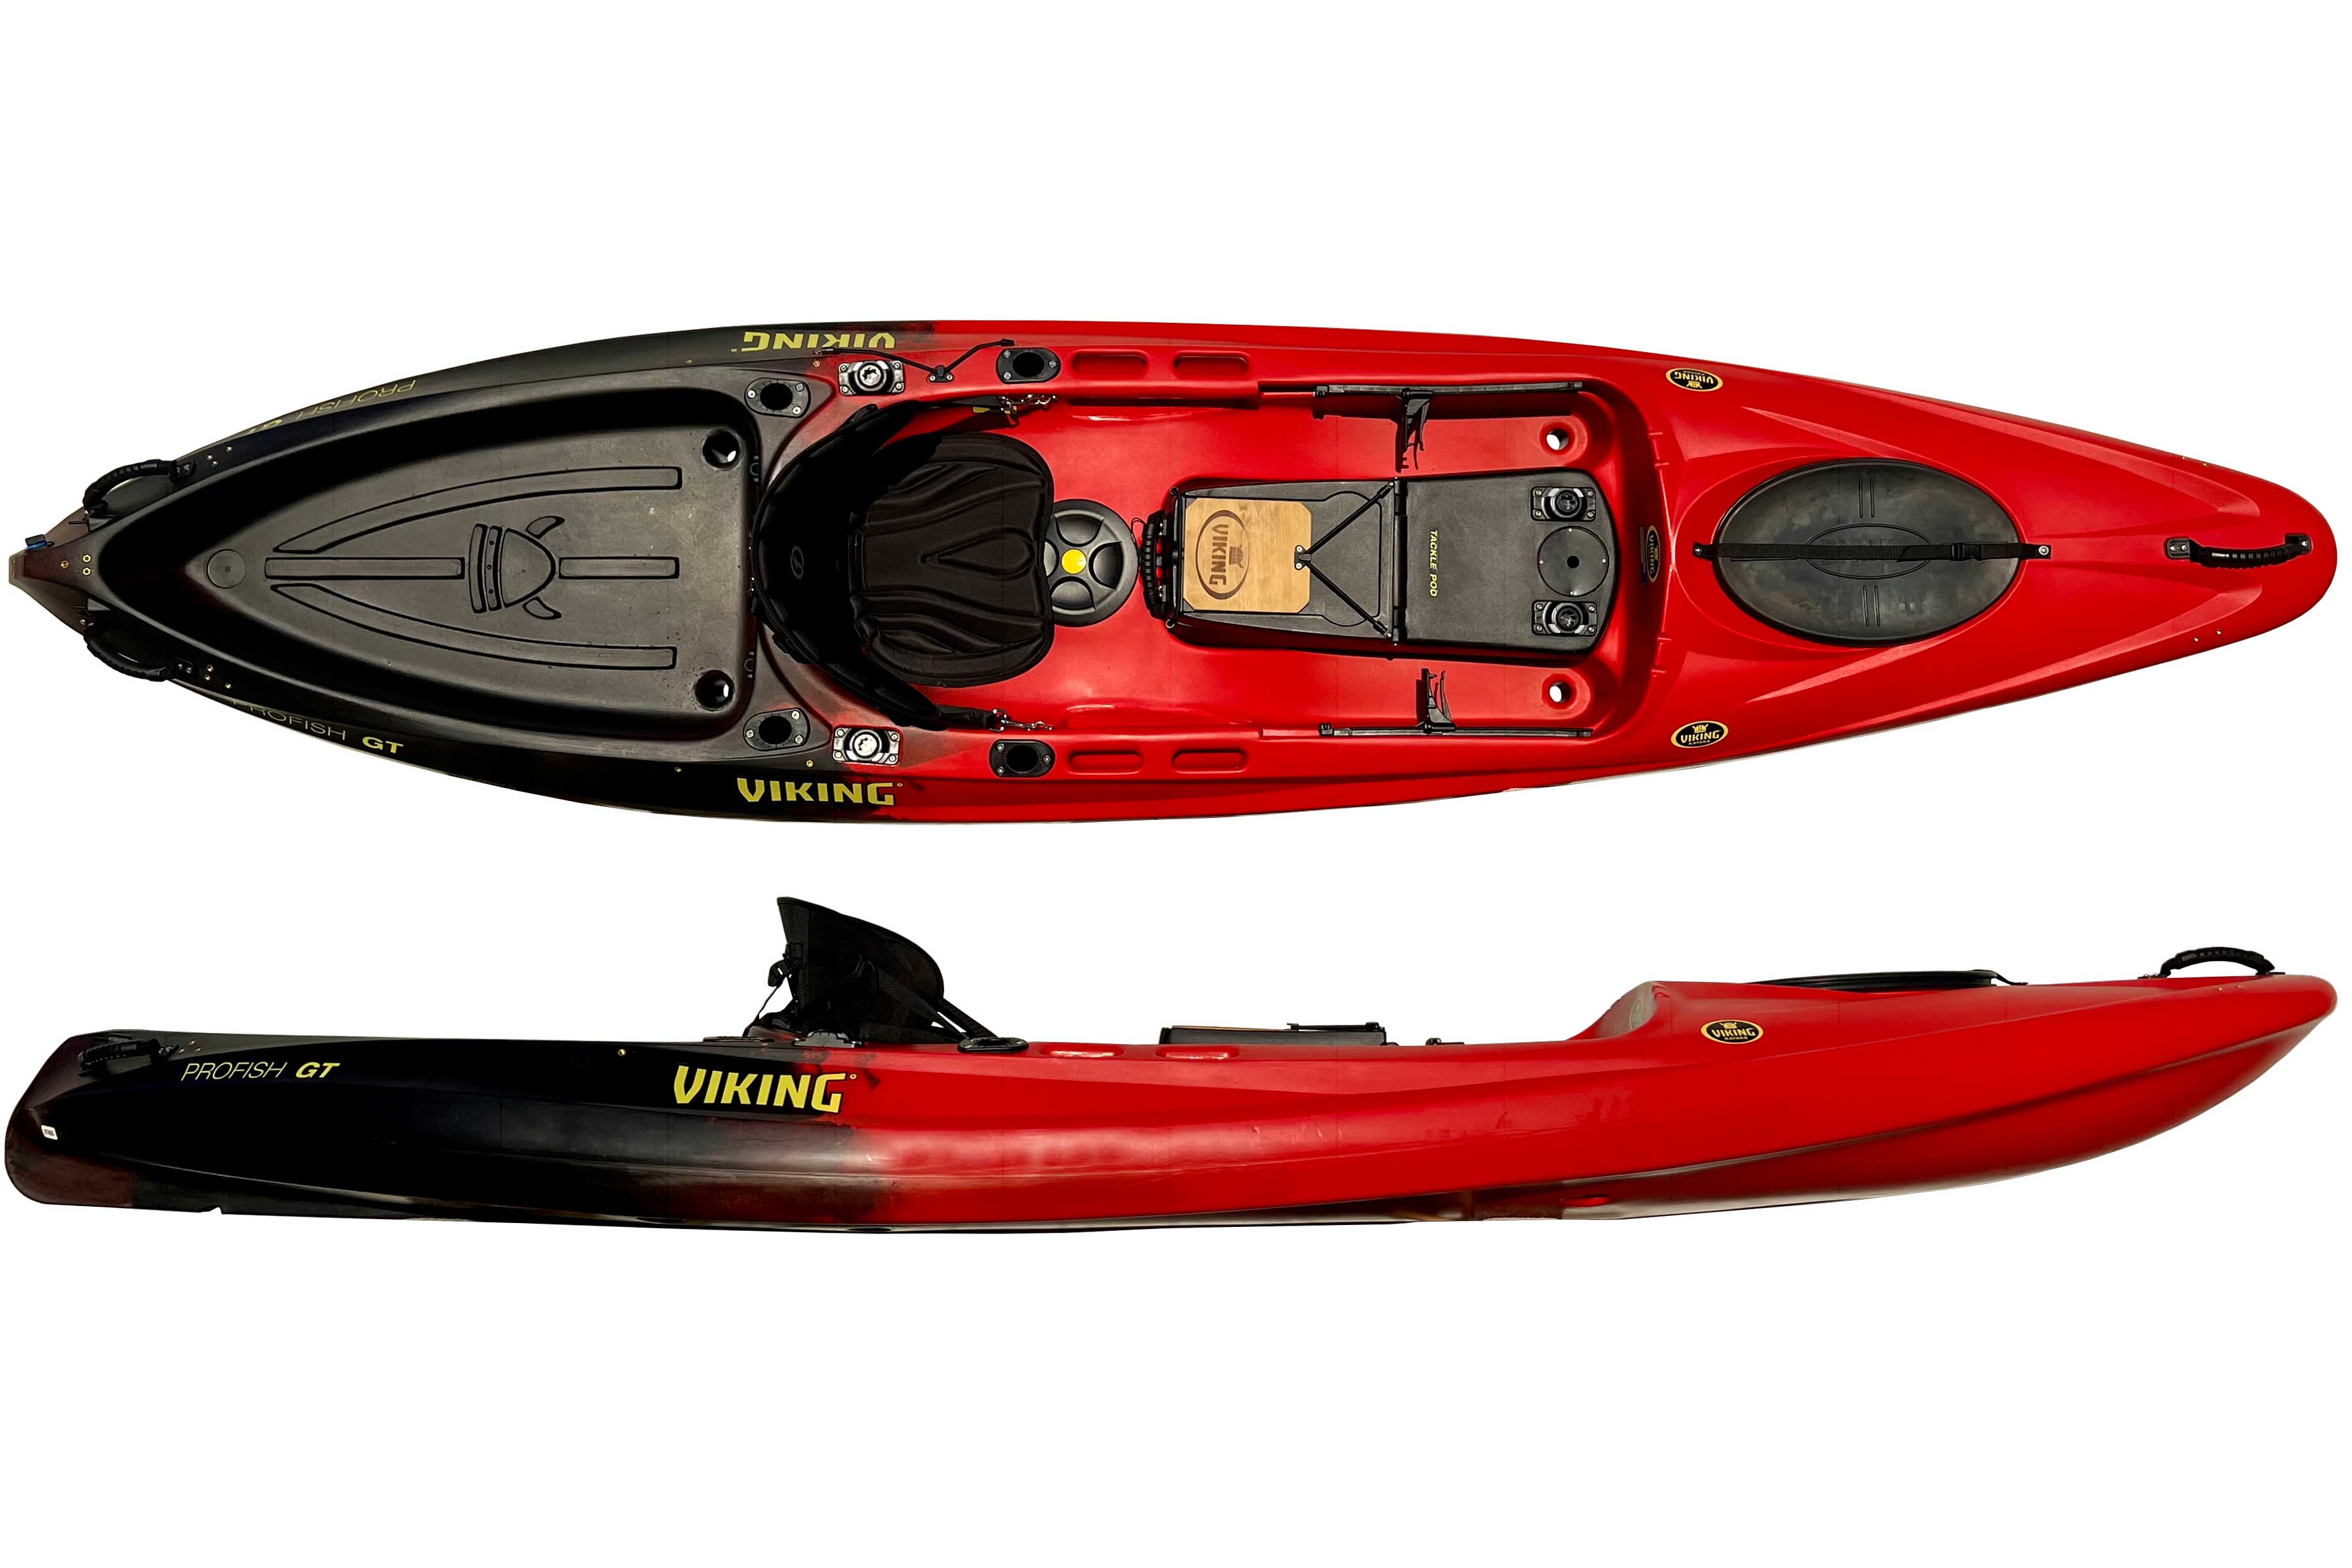 Viking Kayaks Profish GT fishing kayak in red/black